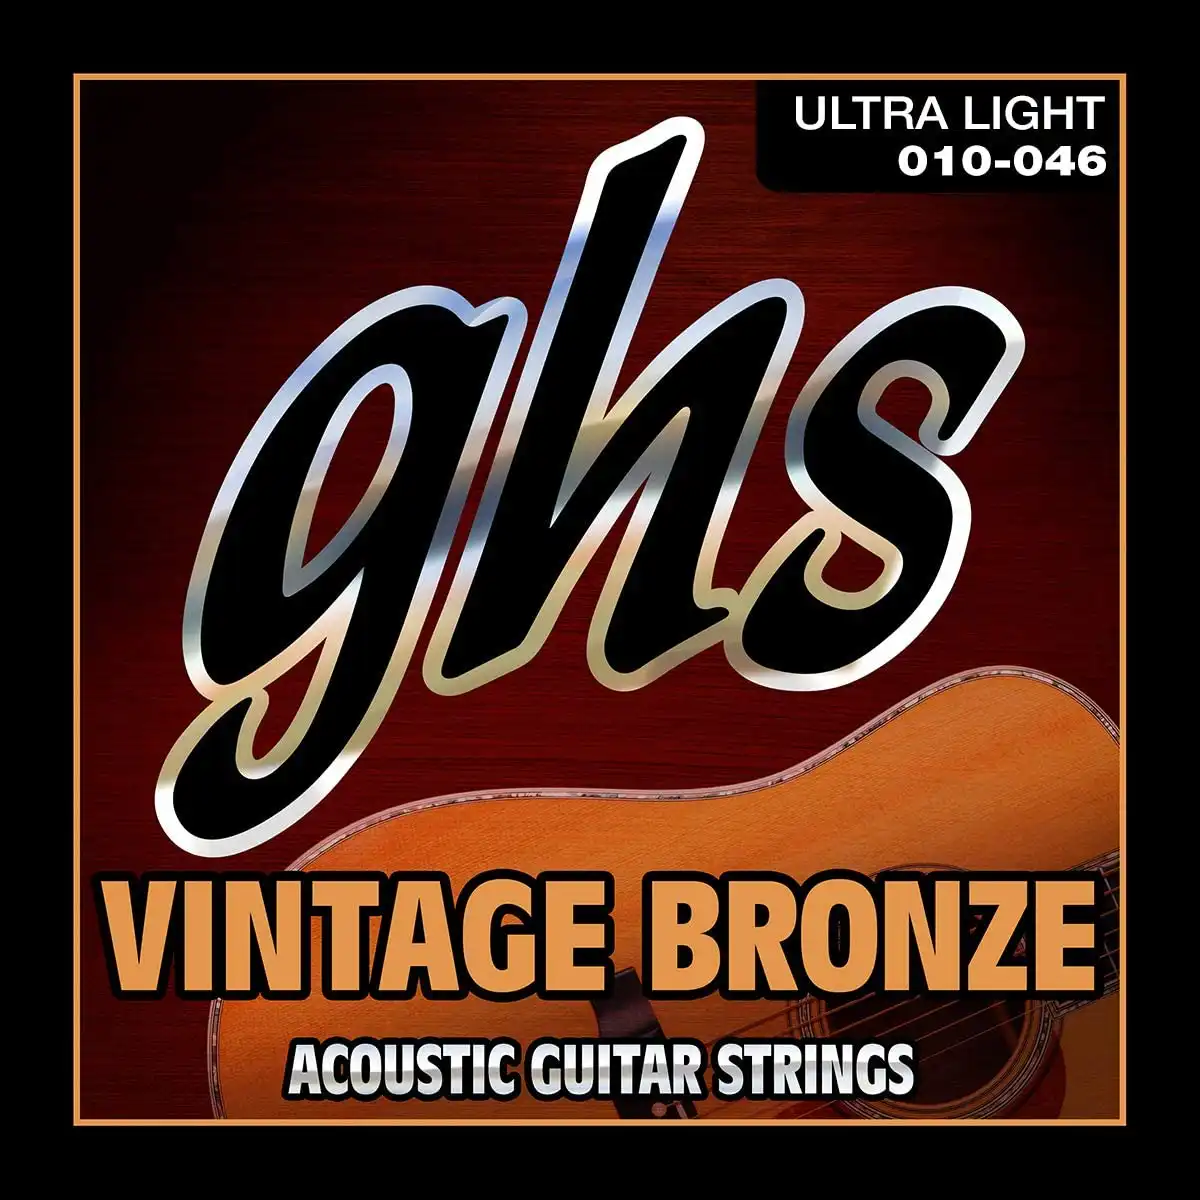 GHS VN-UL Ultra Light Vintage Bronze Acoustic Guitar Strings (6-String Set, 10 - 46)